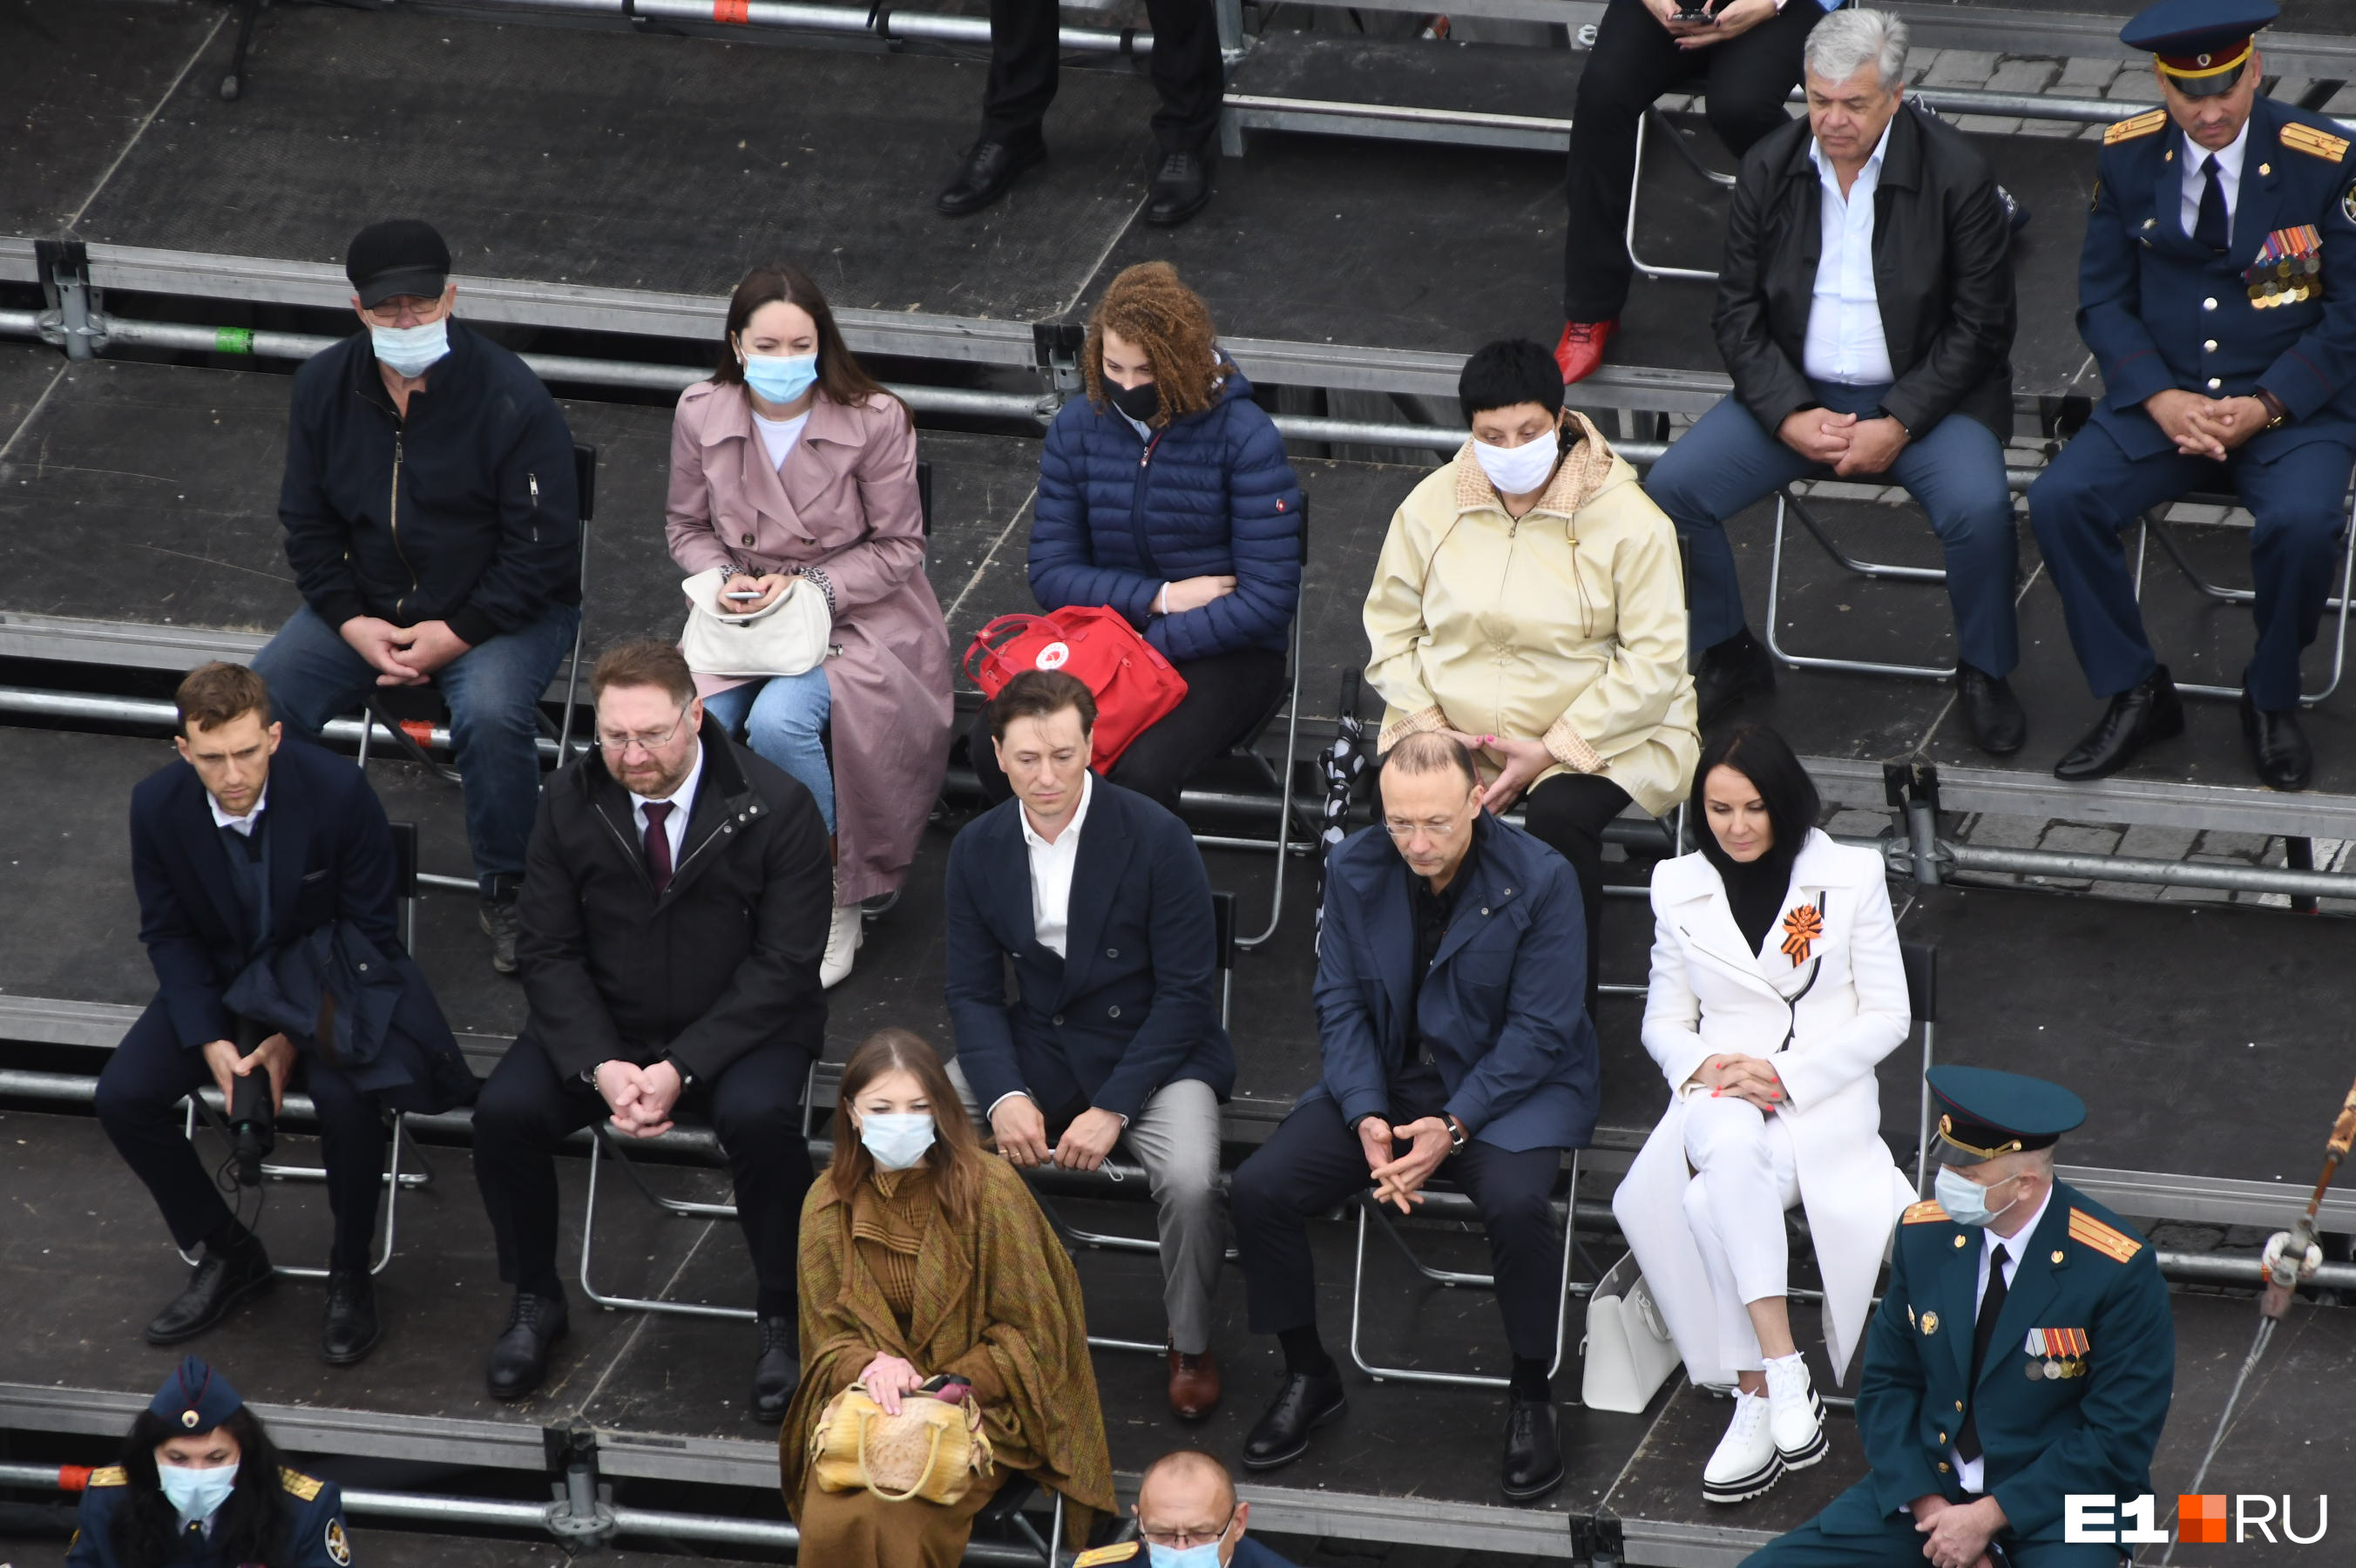 Актер Сергей Безруков тоже был на параде, он (почему-то без маски) сидел на трибуне рядом с главой РМК Игорем Алтушкиным